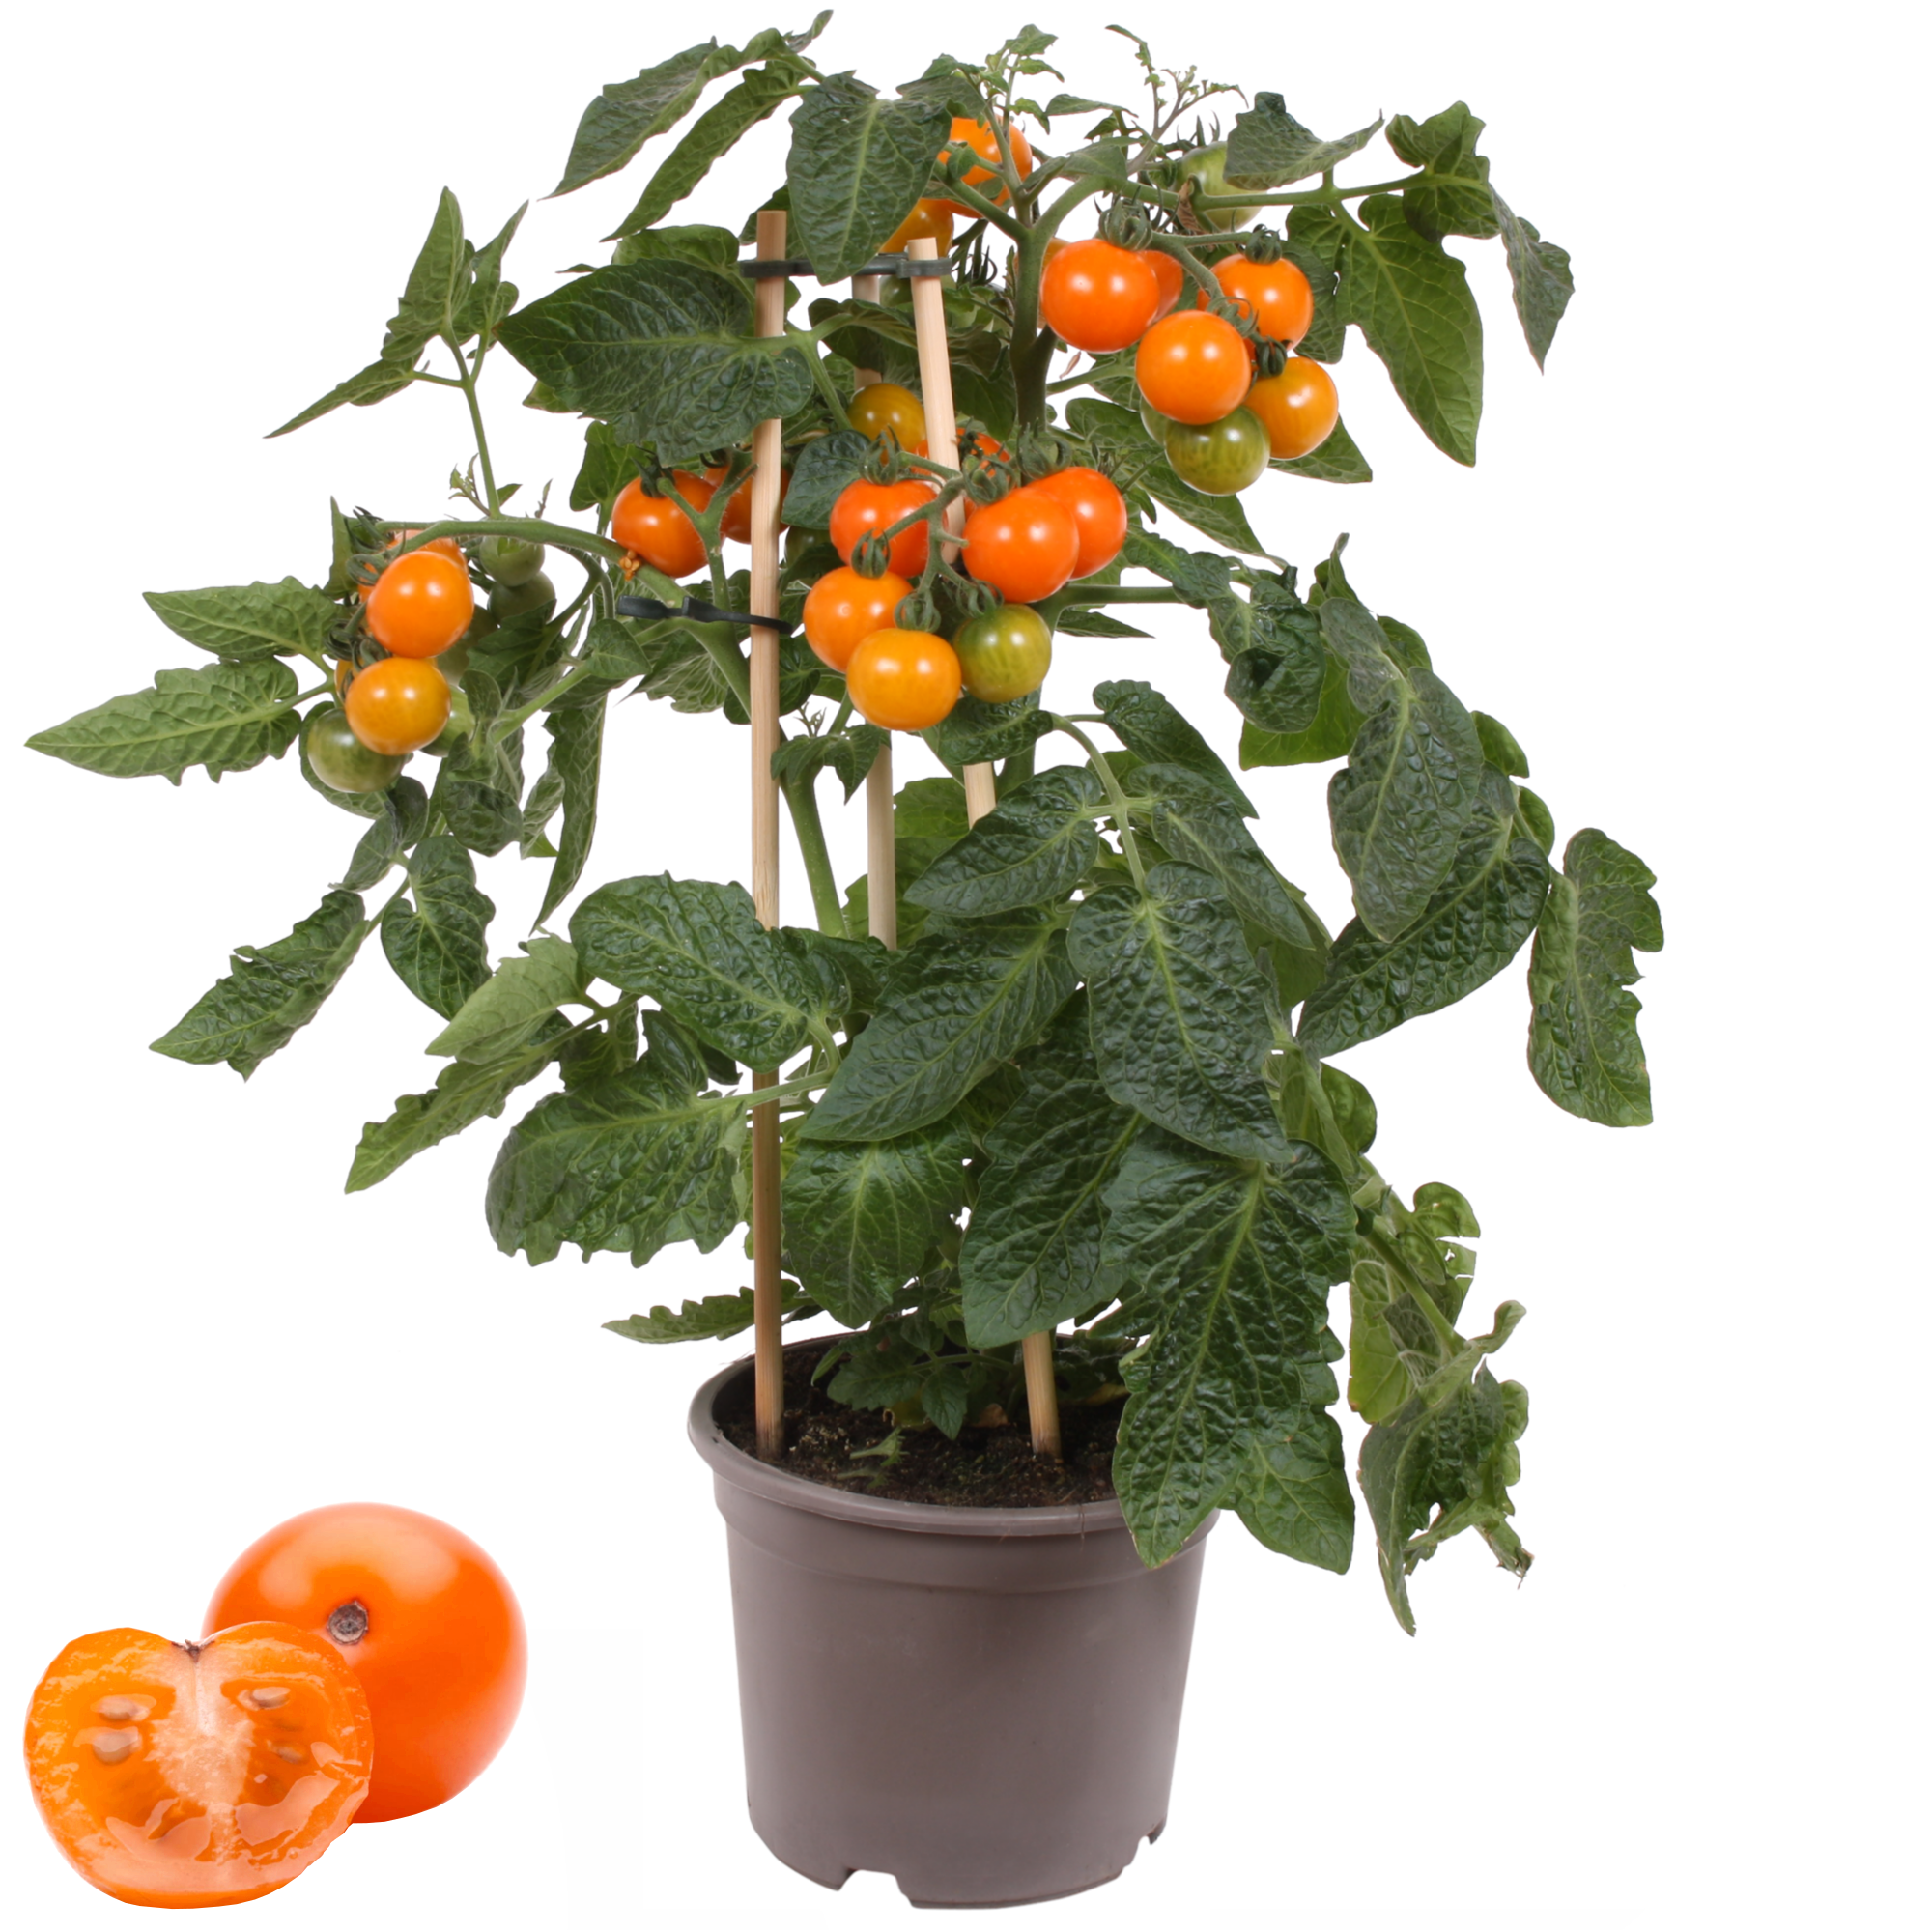 Cherrytomate mit Früchten, orange, 14 cm Topf + product picture